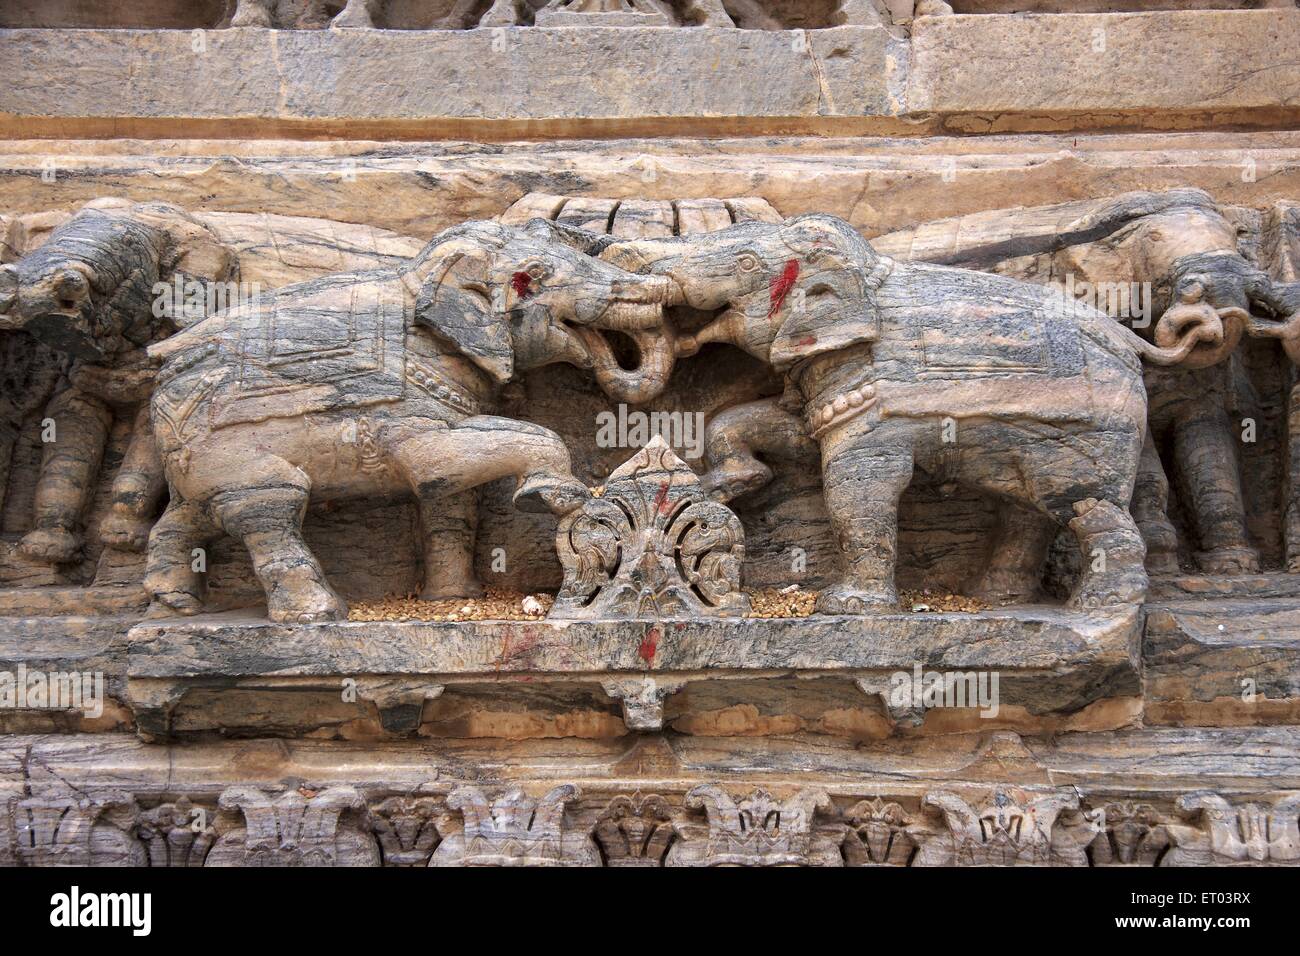 Jagdish Temple, Vishnu temples, Udaipur, Rajasthan, India, Asia Stock Photo